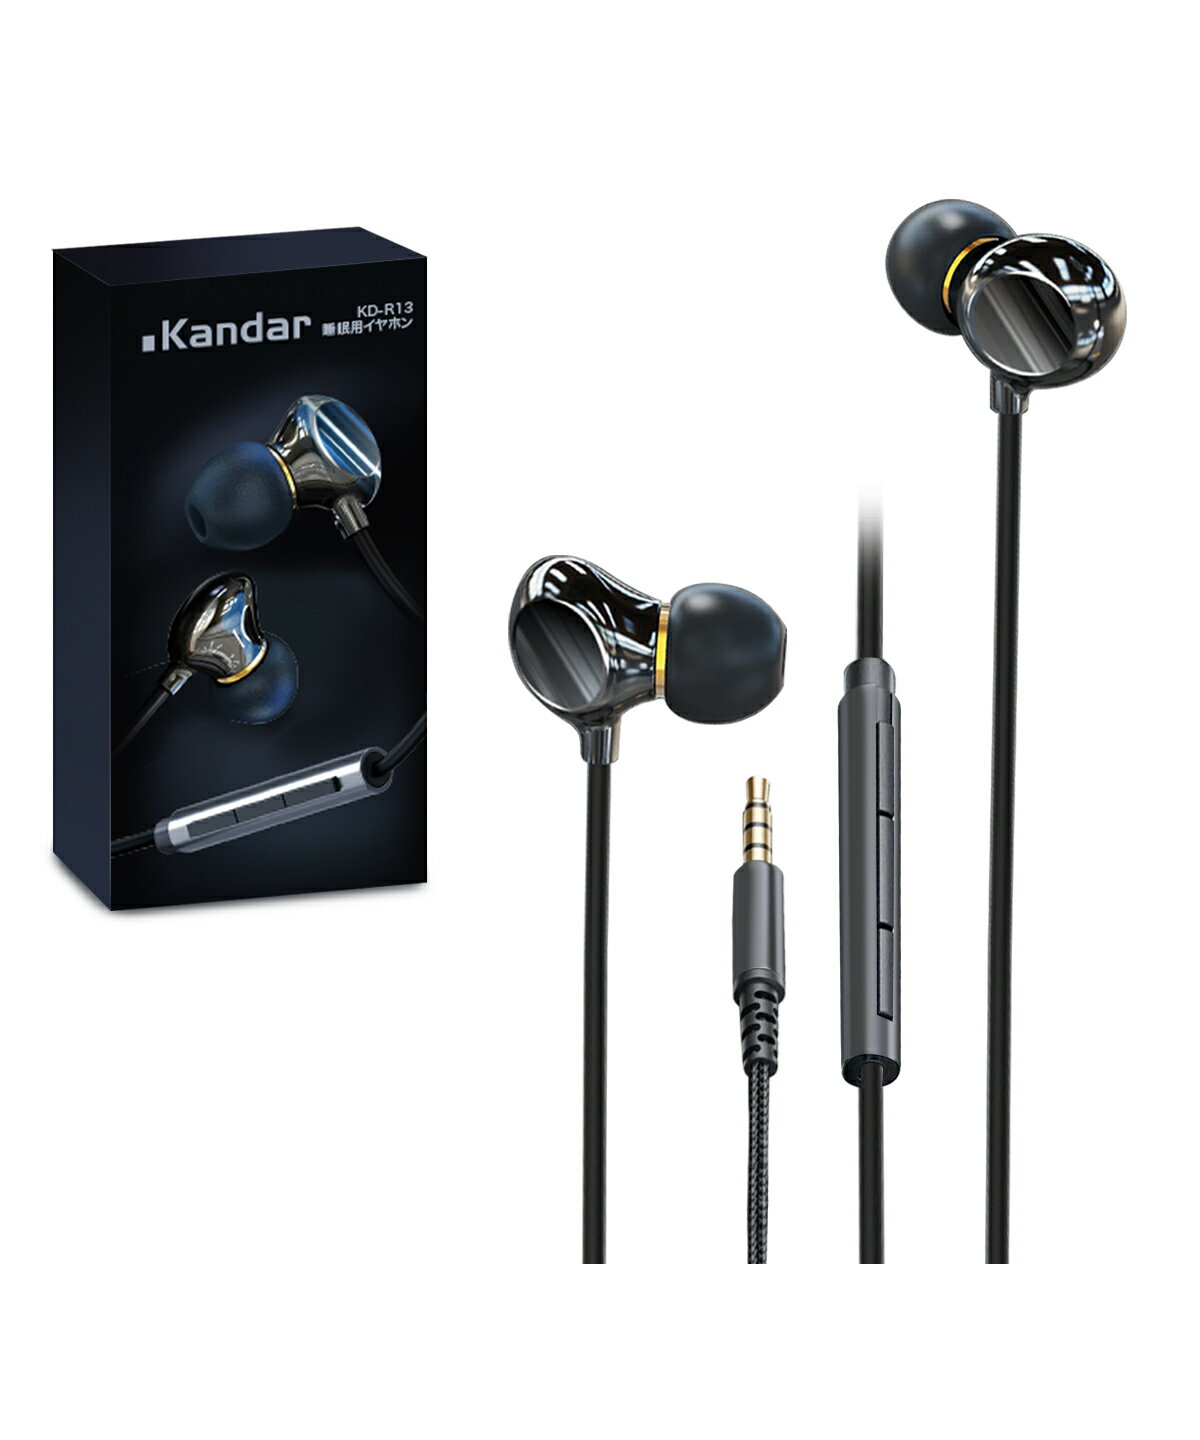 Kandar 寝ホン 有線 睡眠用イヤホン 寝ながら 痛く無い 軽量 小型 耳が痛くならない KD-R13 asmr 安眠 仕事 外部ノイズ遮断 マイク付き iPhone & Android 対応 3.5mm